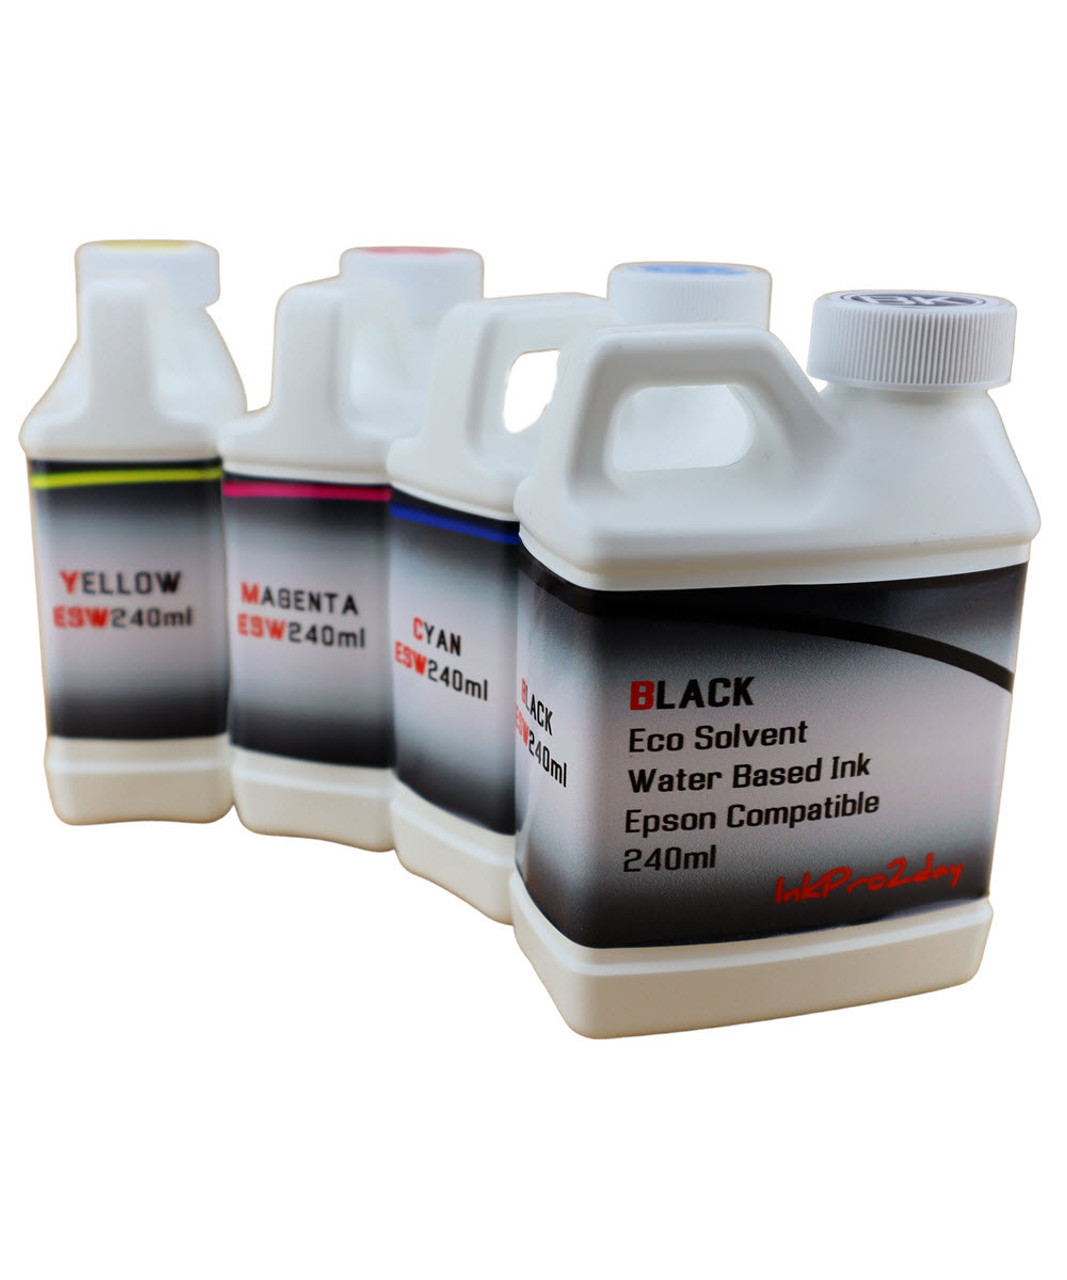 Eco Solvent Water Based Ink 4- 240ml bottles for Epson EcoTank ET-2840 Printer